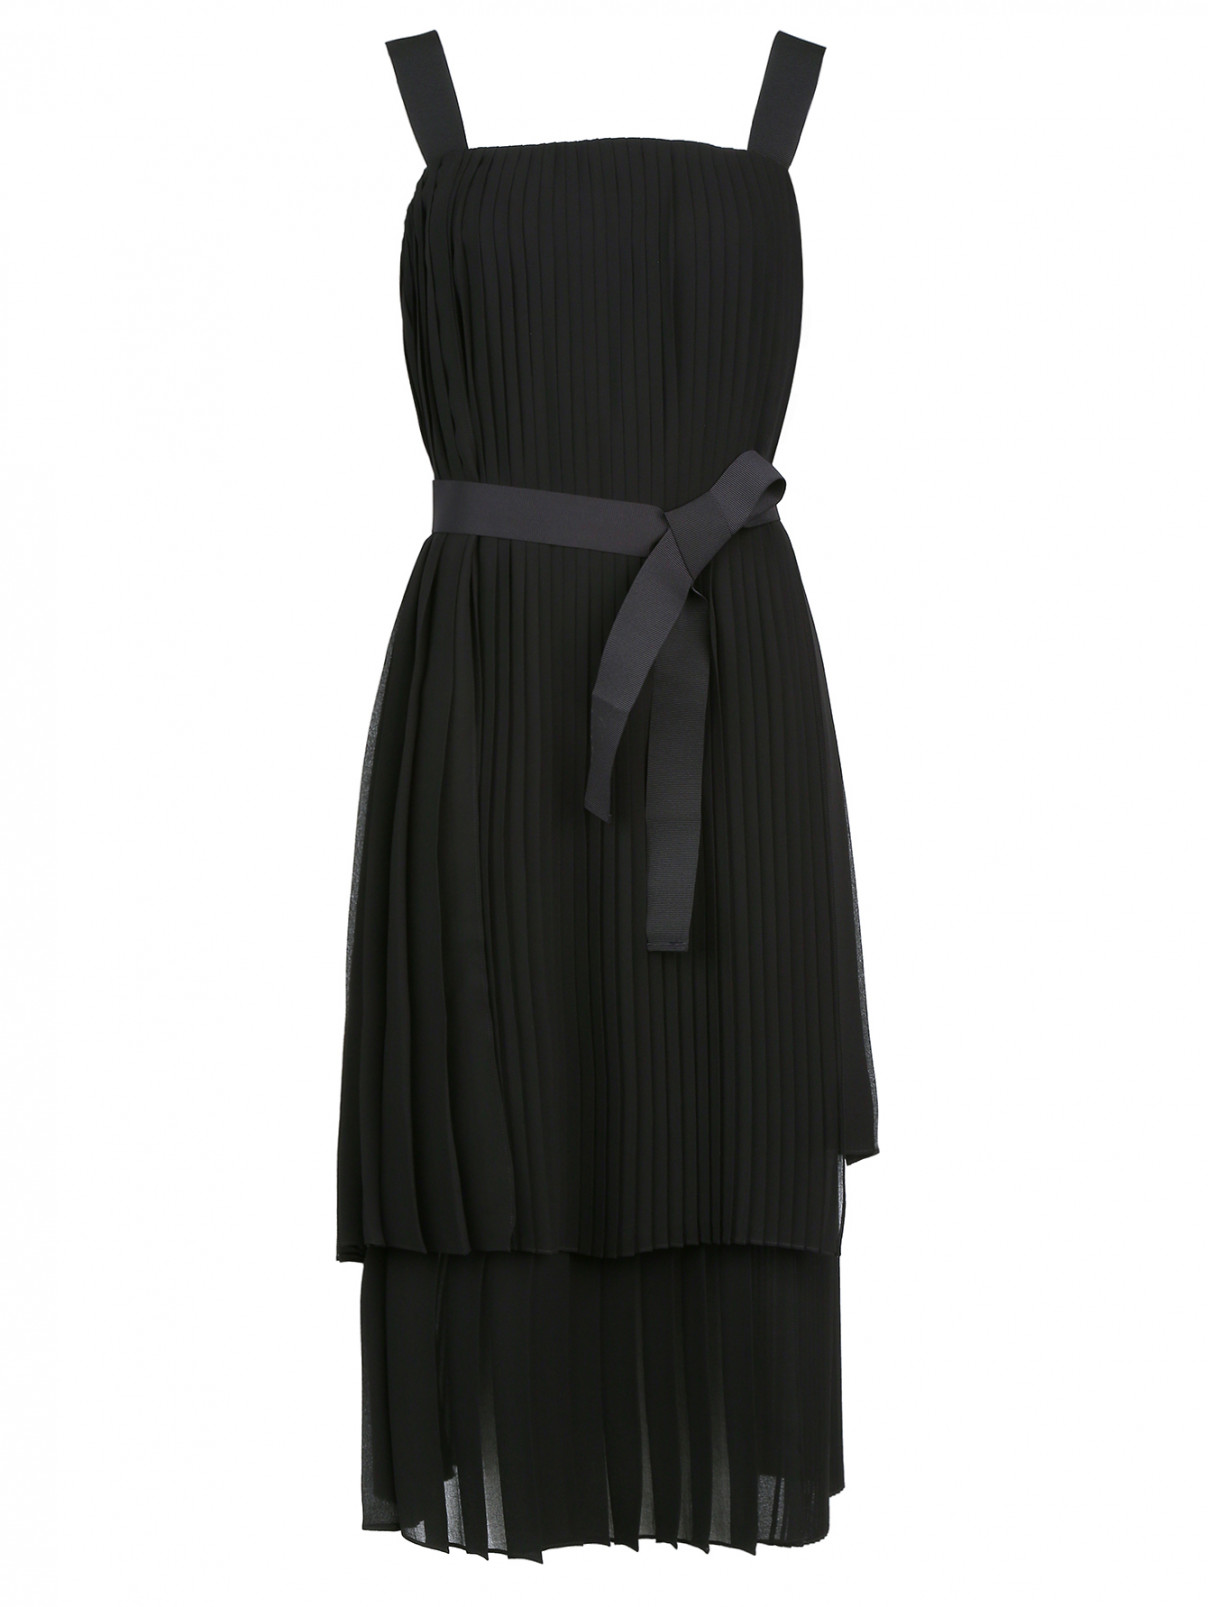 Плиссированое платье на широких бретелях Marina Rinaldi  –  Общий вид  – Цвет:  Черный